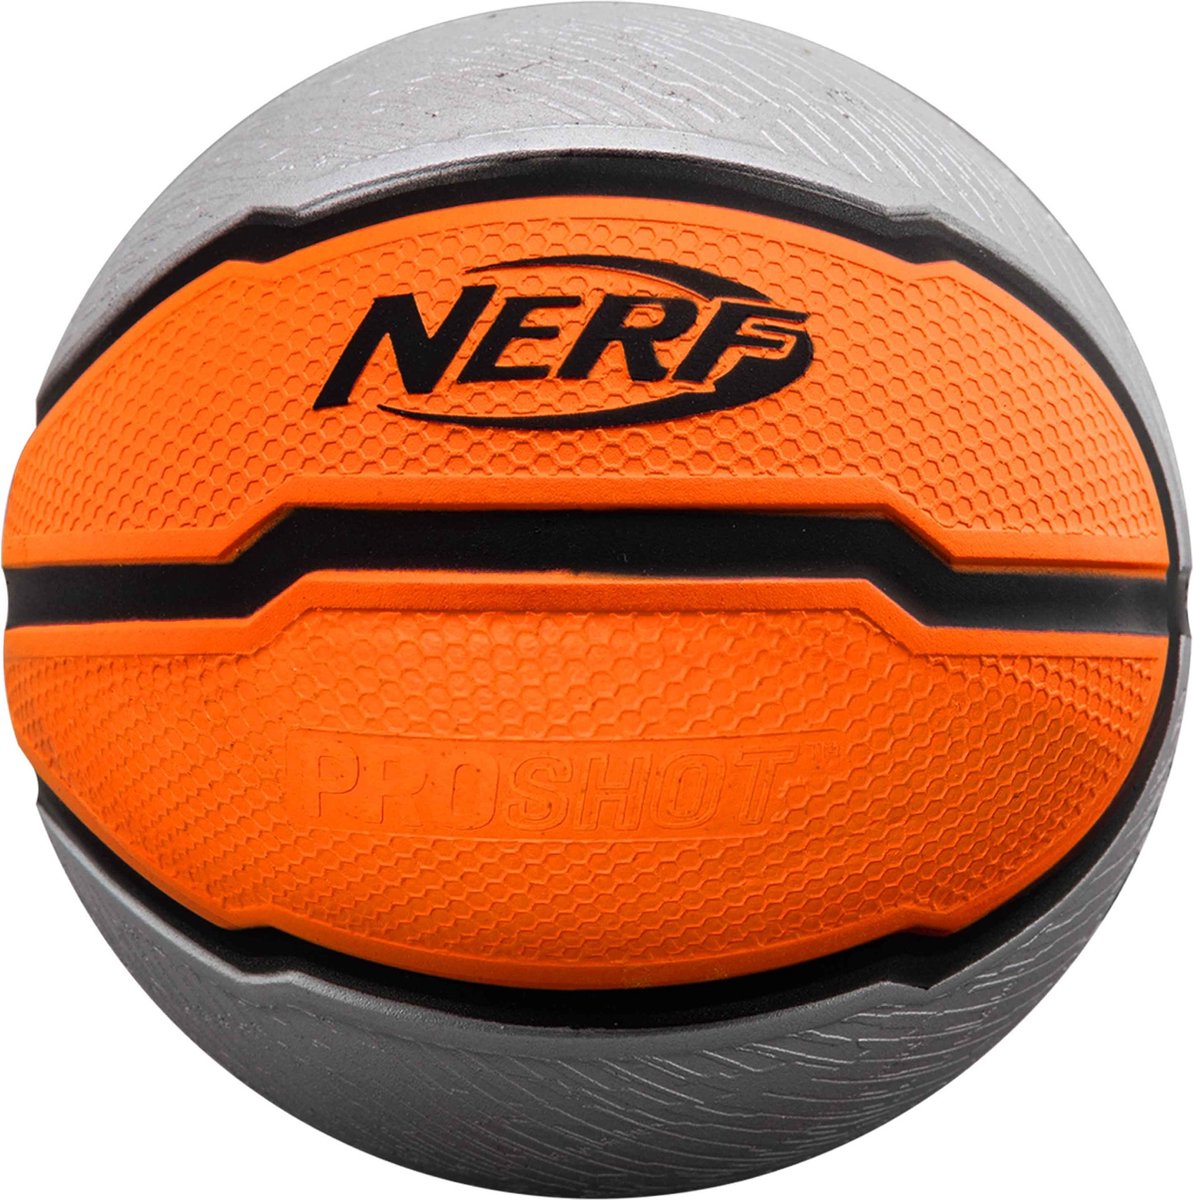 Ballon de basket silencieux pour la maison 24CM - ballon de basket